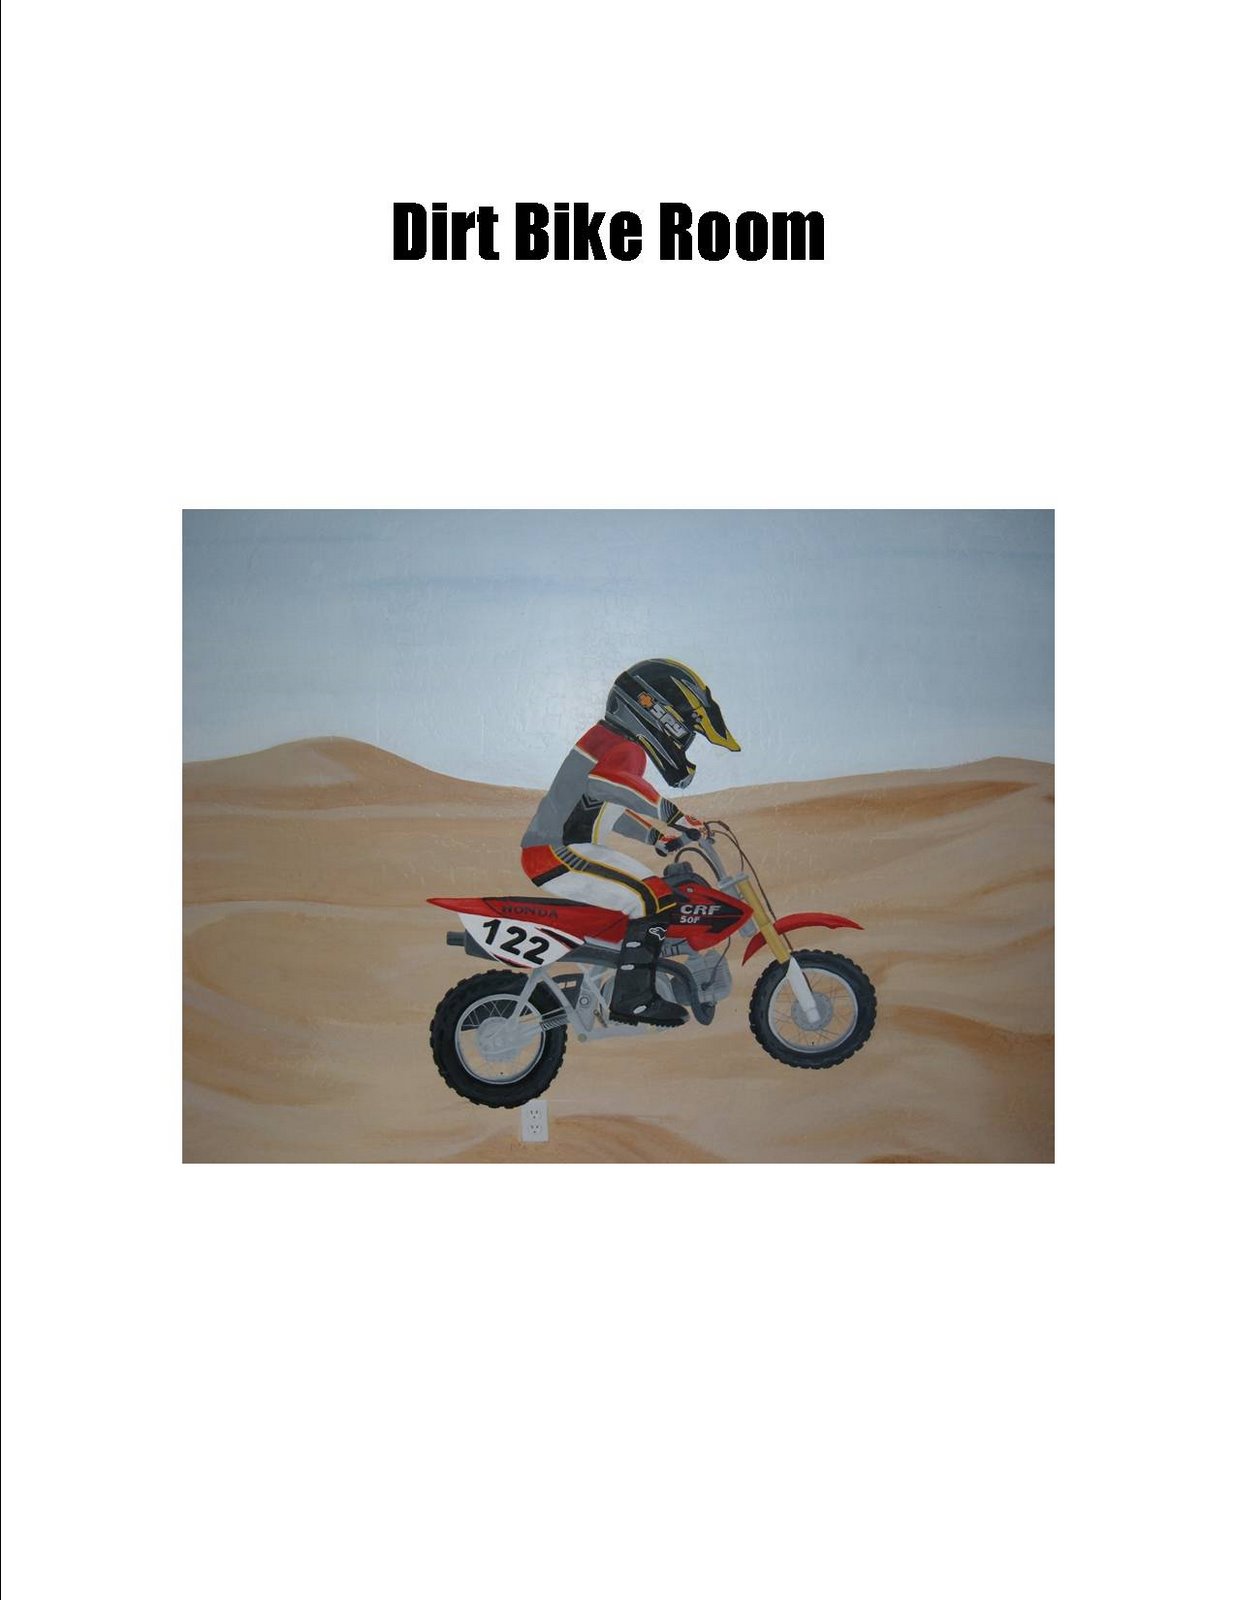 [dirt+bike.jpg]